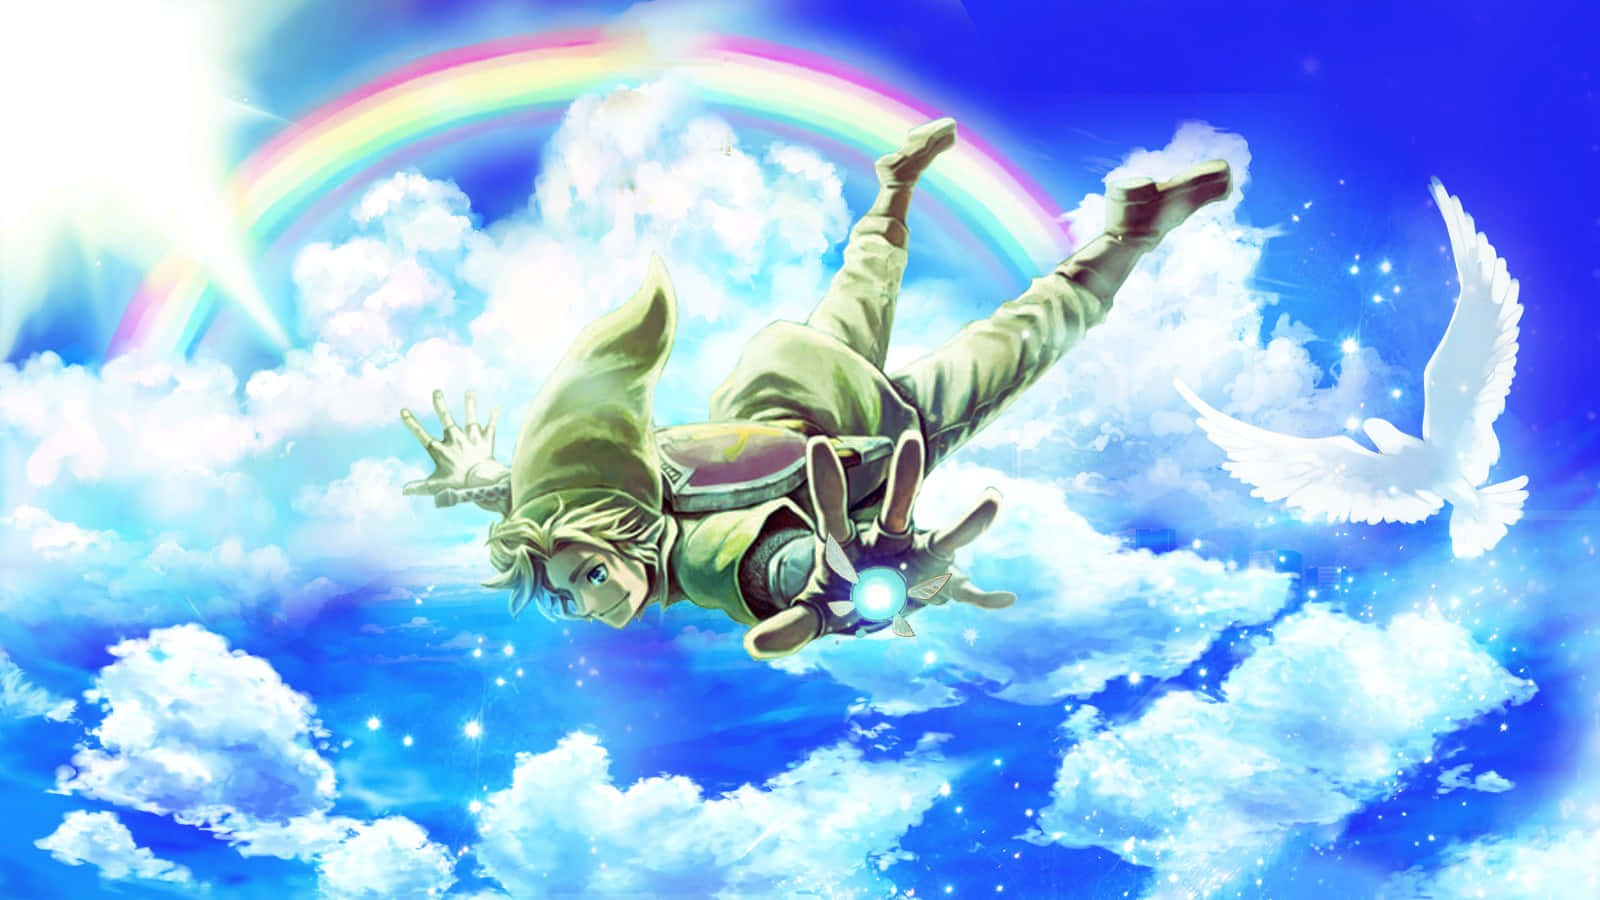 Link and Zelda flying together in Skyward Sword Wallpaper